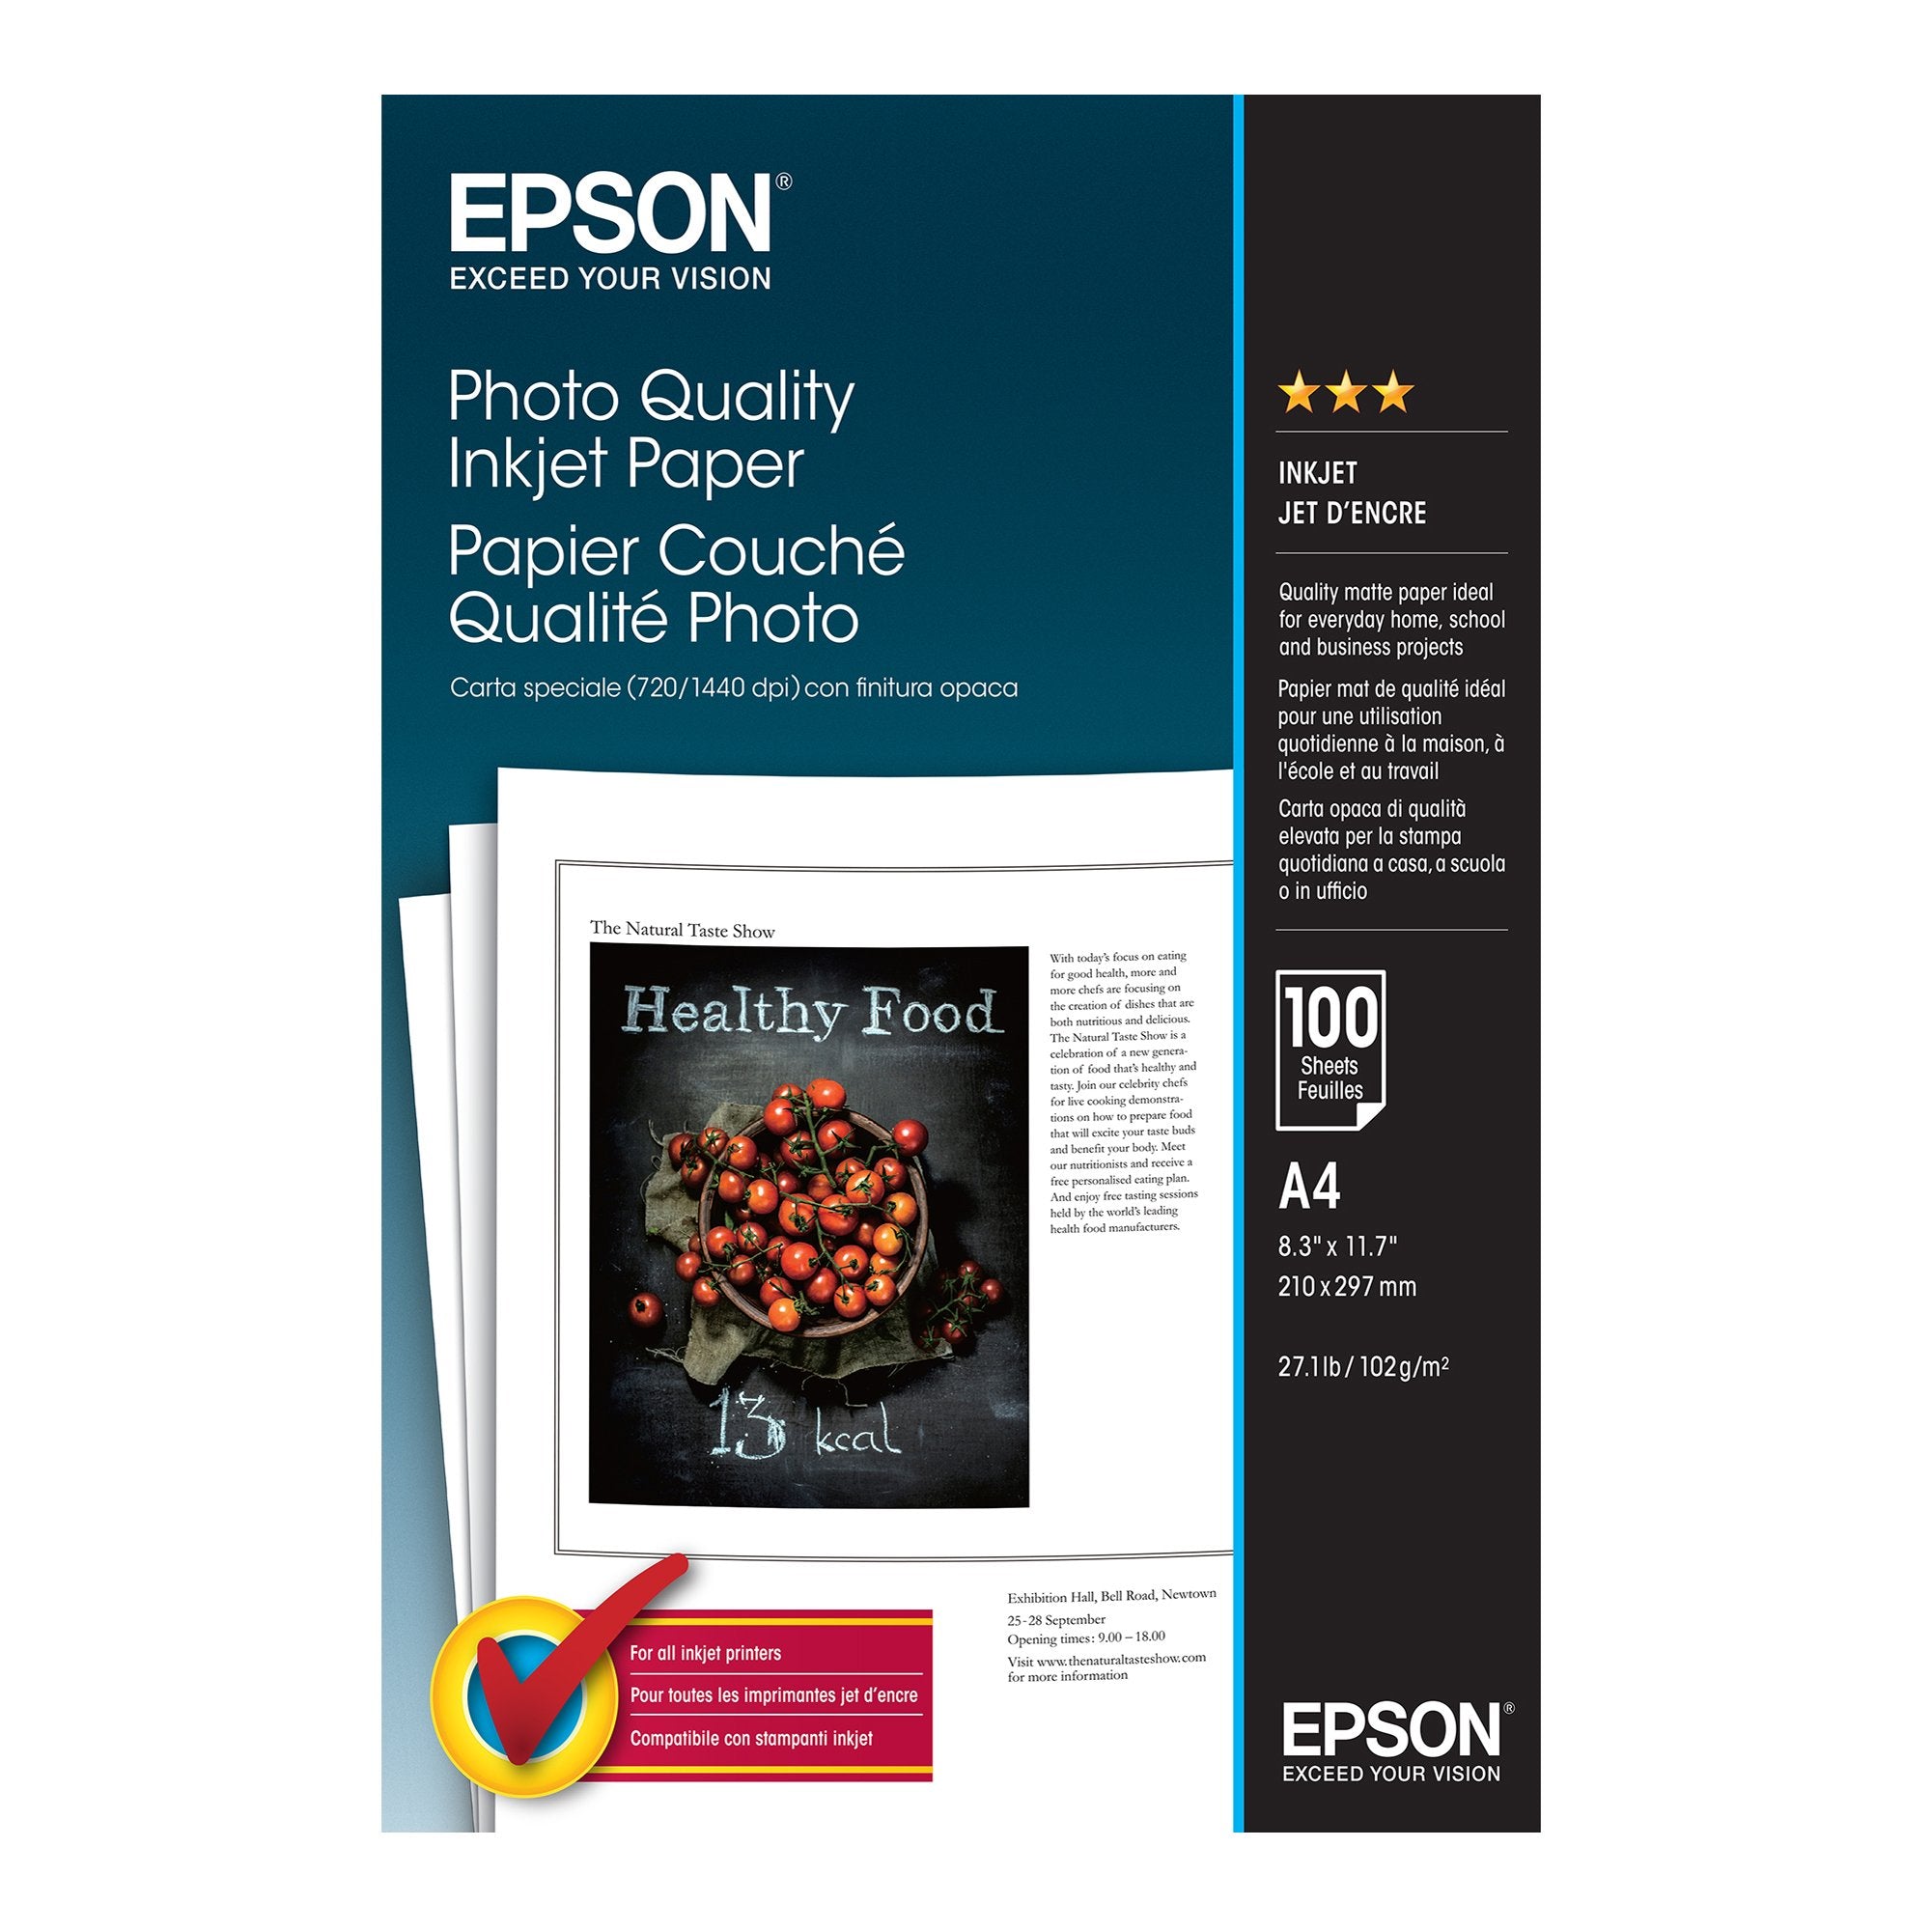 epson-carta-fotografica-opaca-100fg-102gr-210x297mm-a4-720-1440dpi-hq